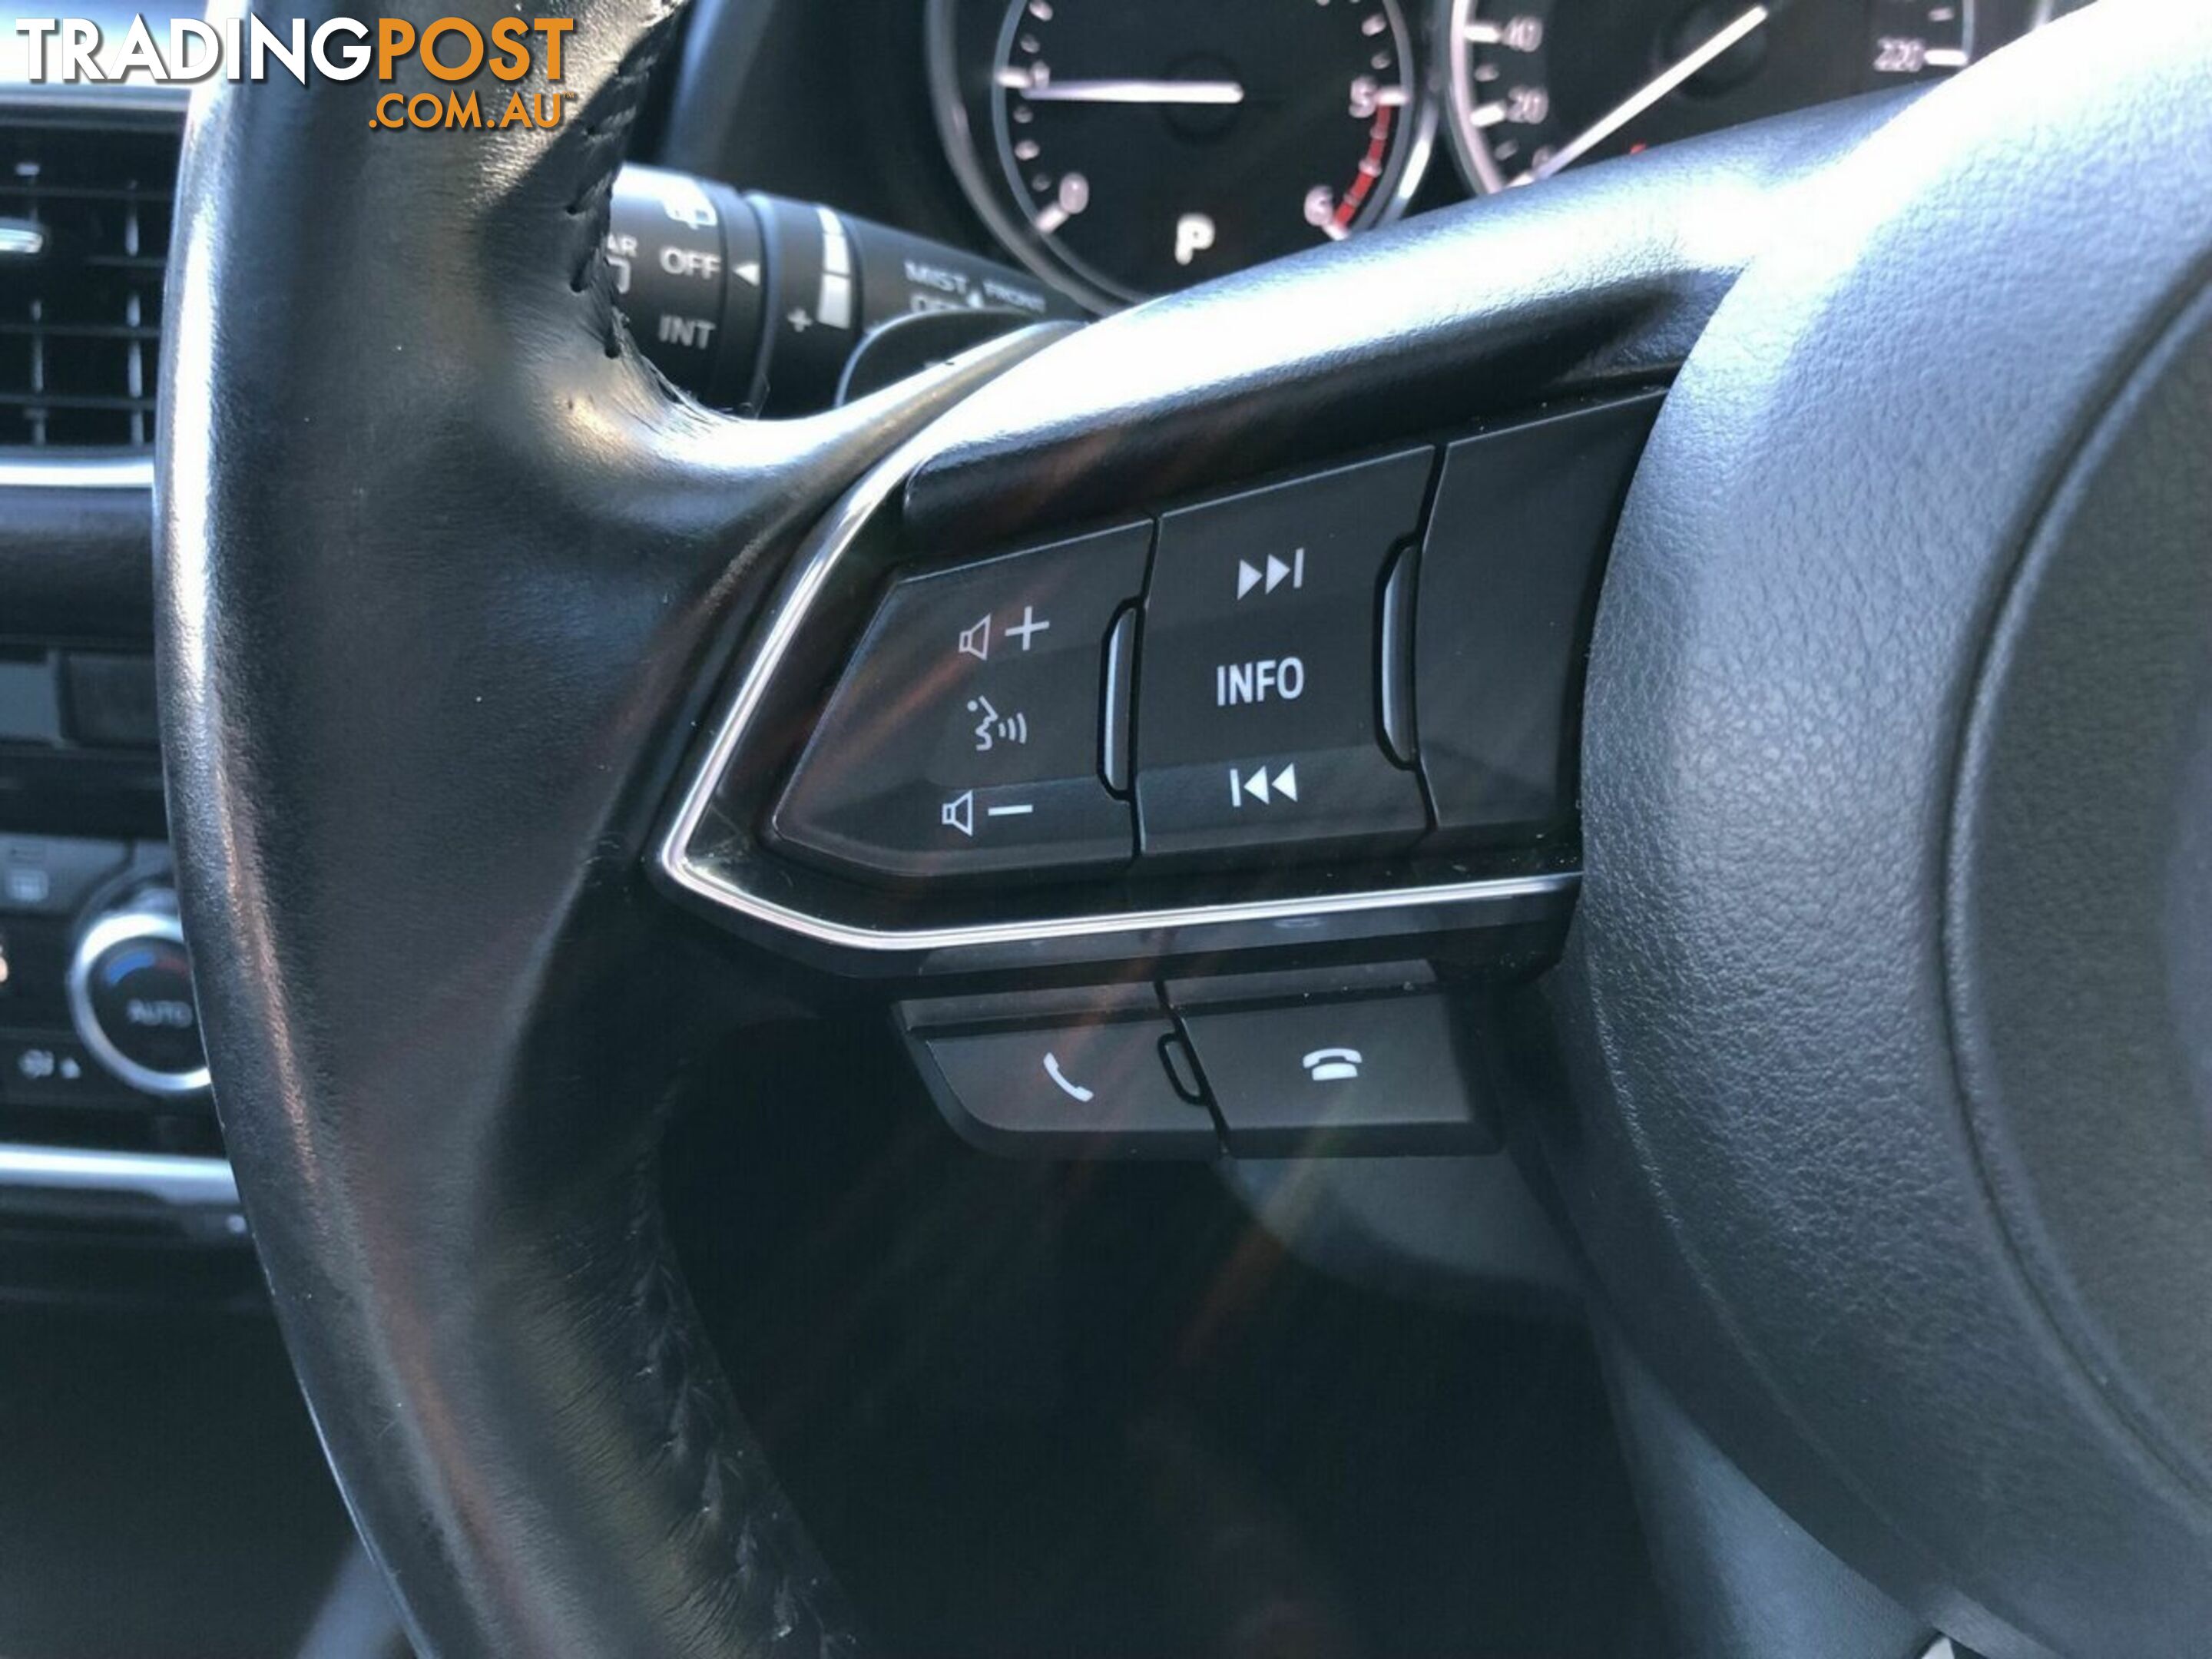 2016 MAZDA 6 GT SKYACTIV-DRIVE GL1021 WAGON